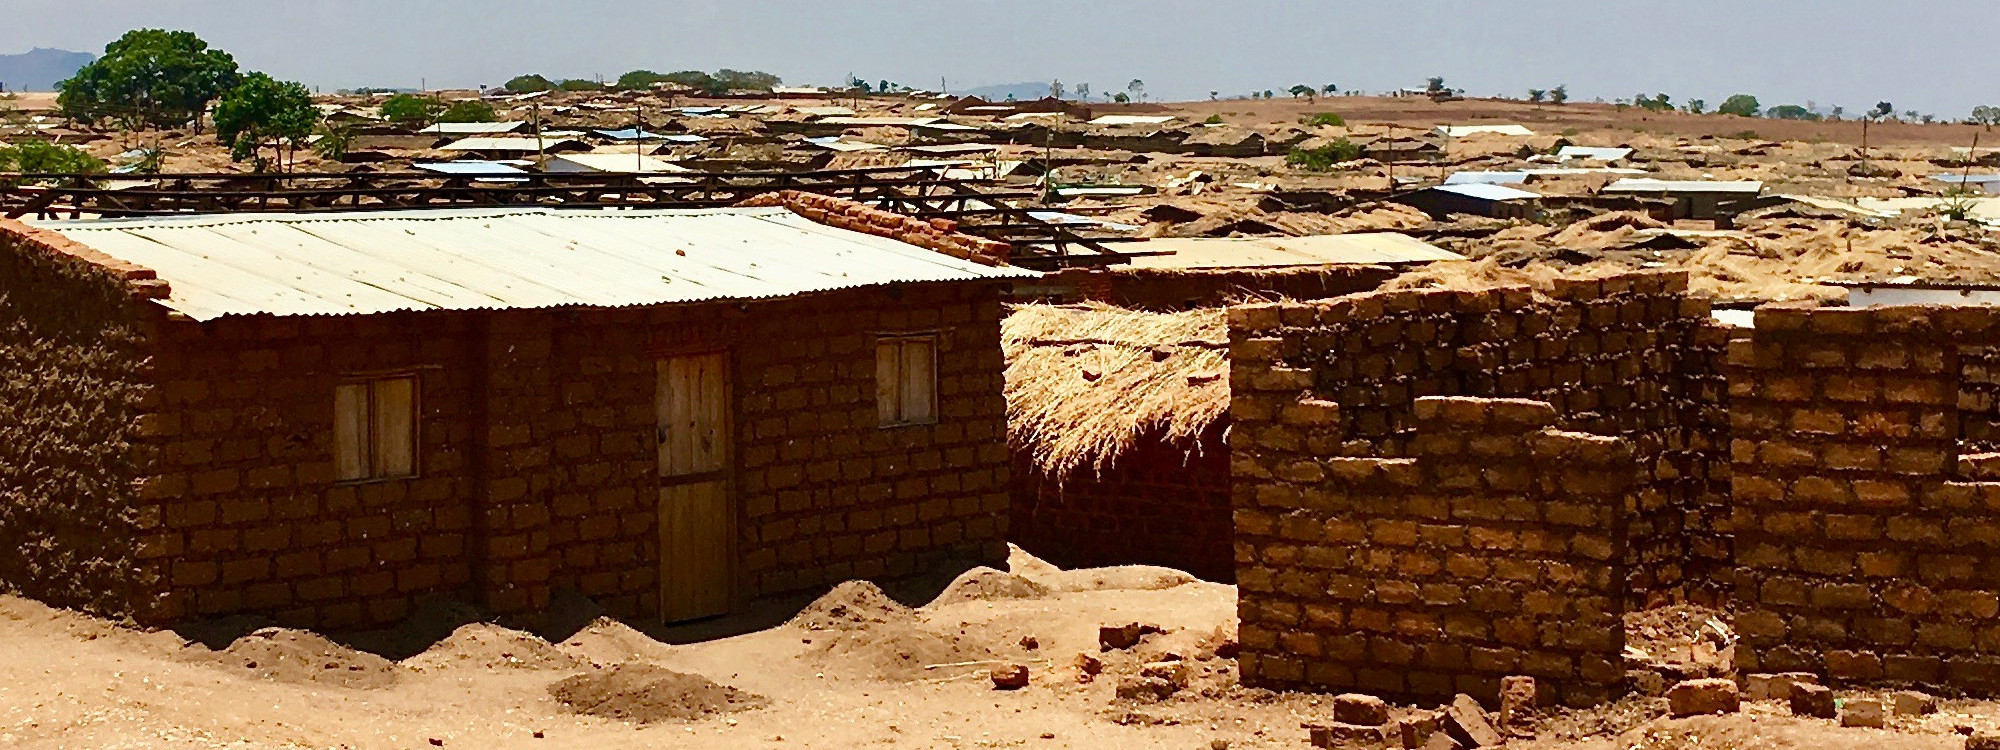 Dzaleka Refugee Camp